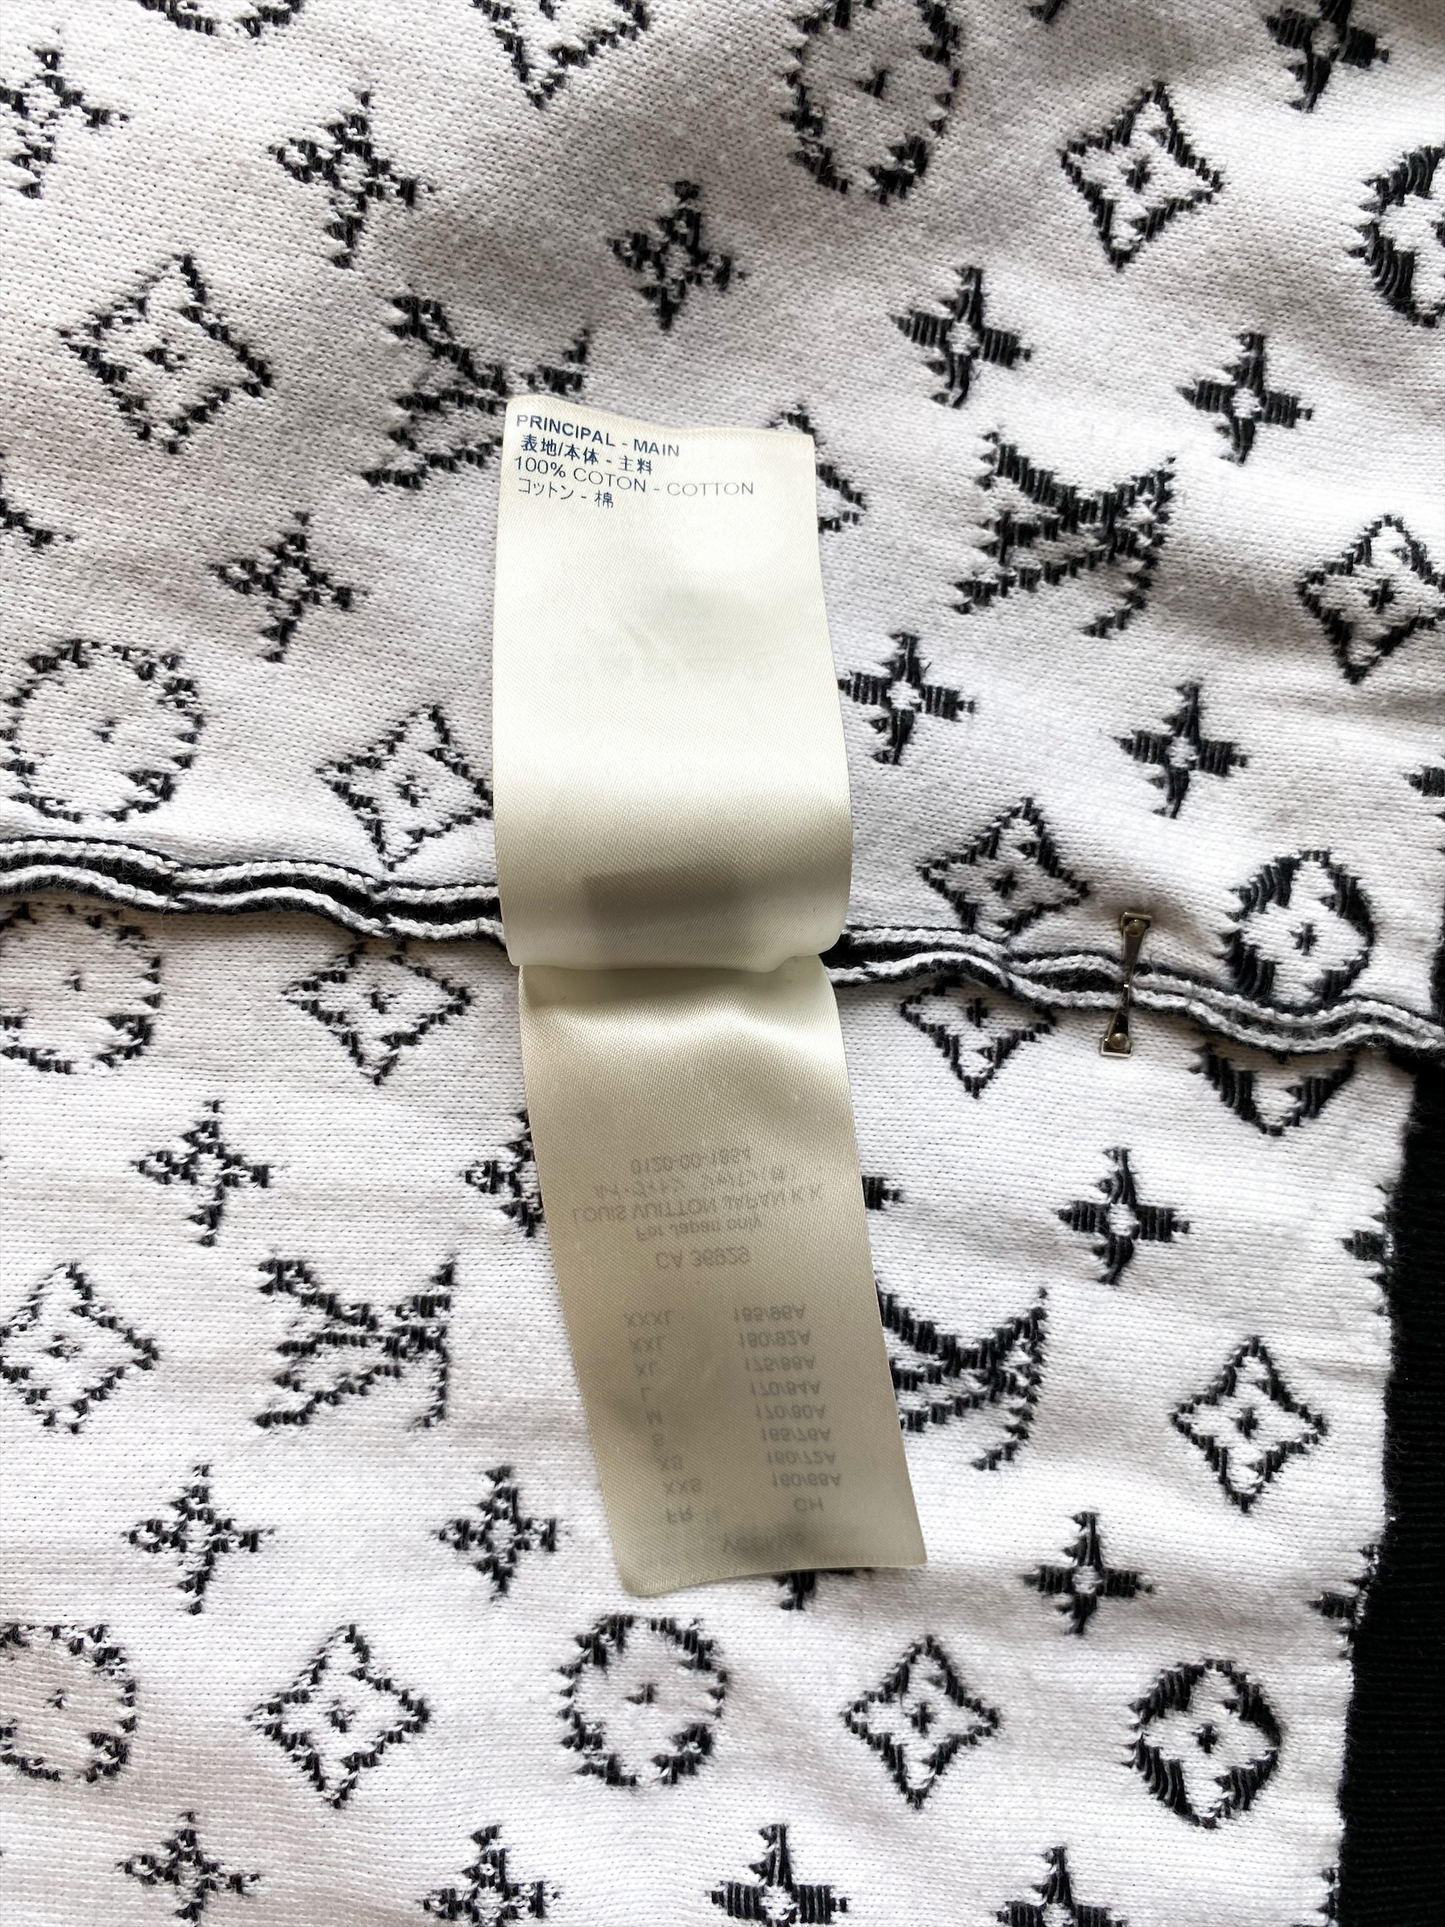 Louis Vuitton Black Gradient Monogram Sweater – Savonches